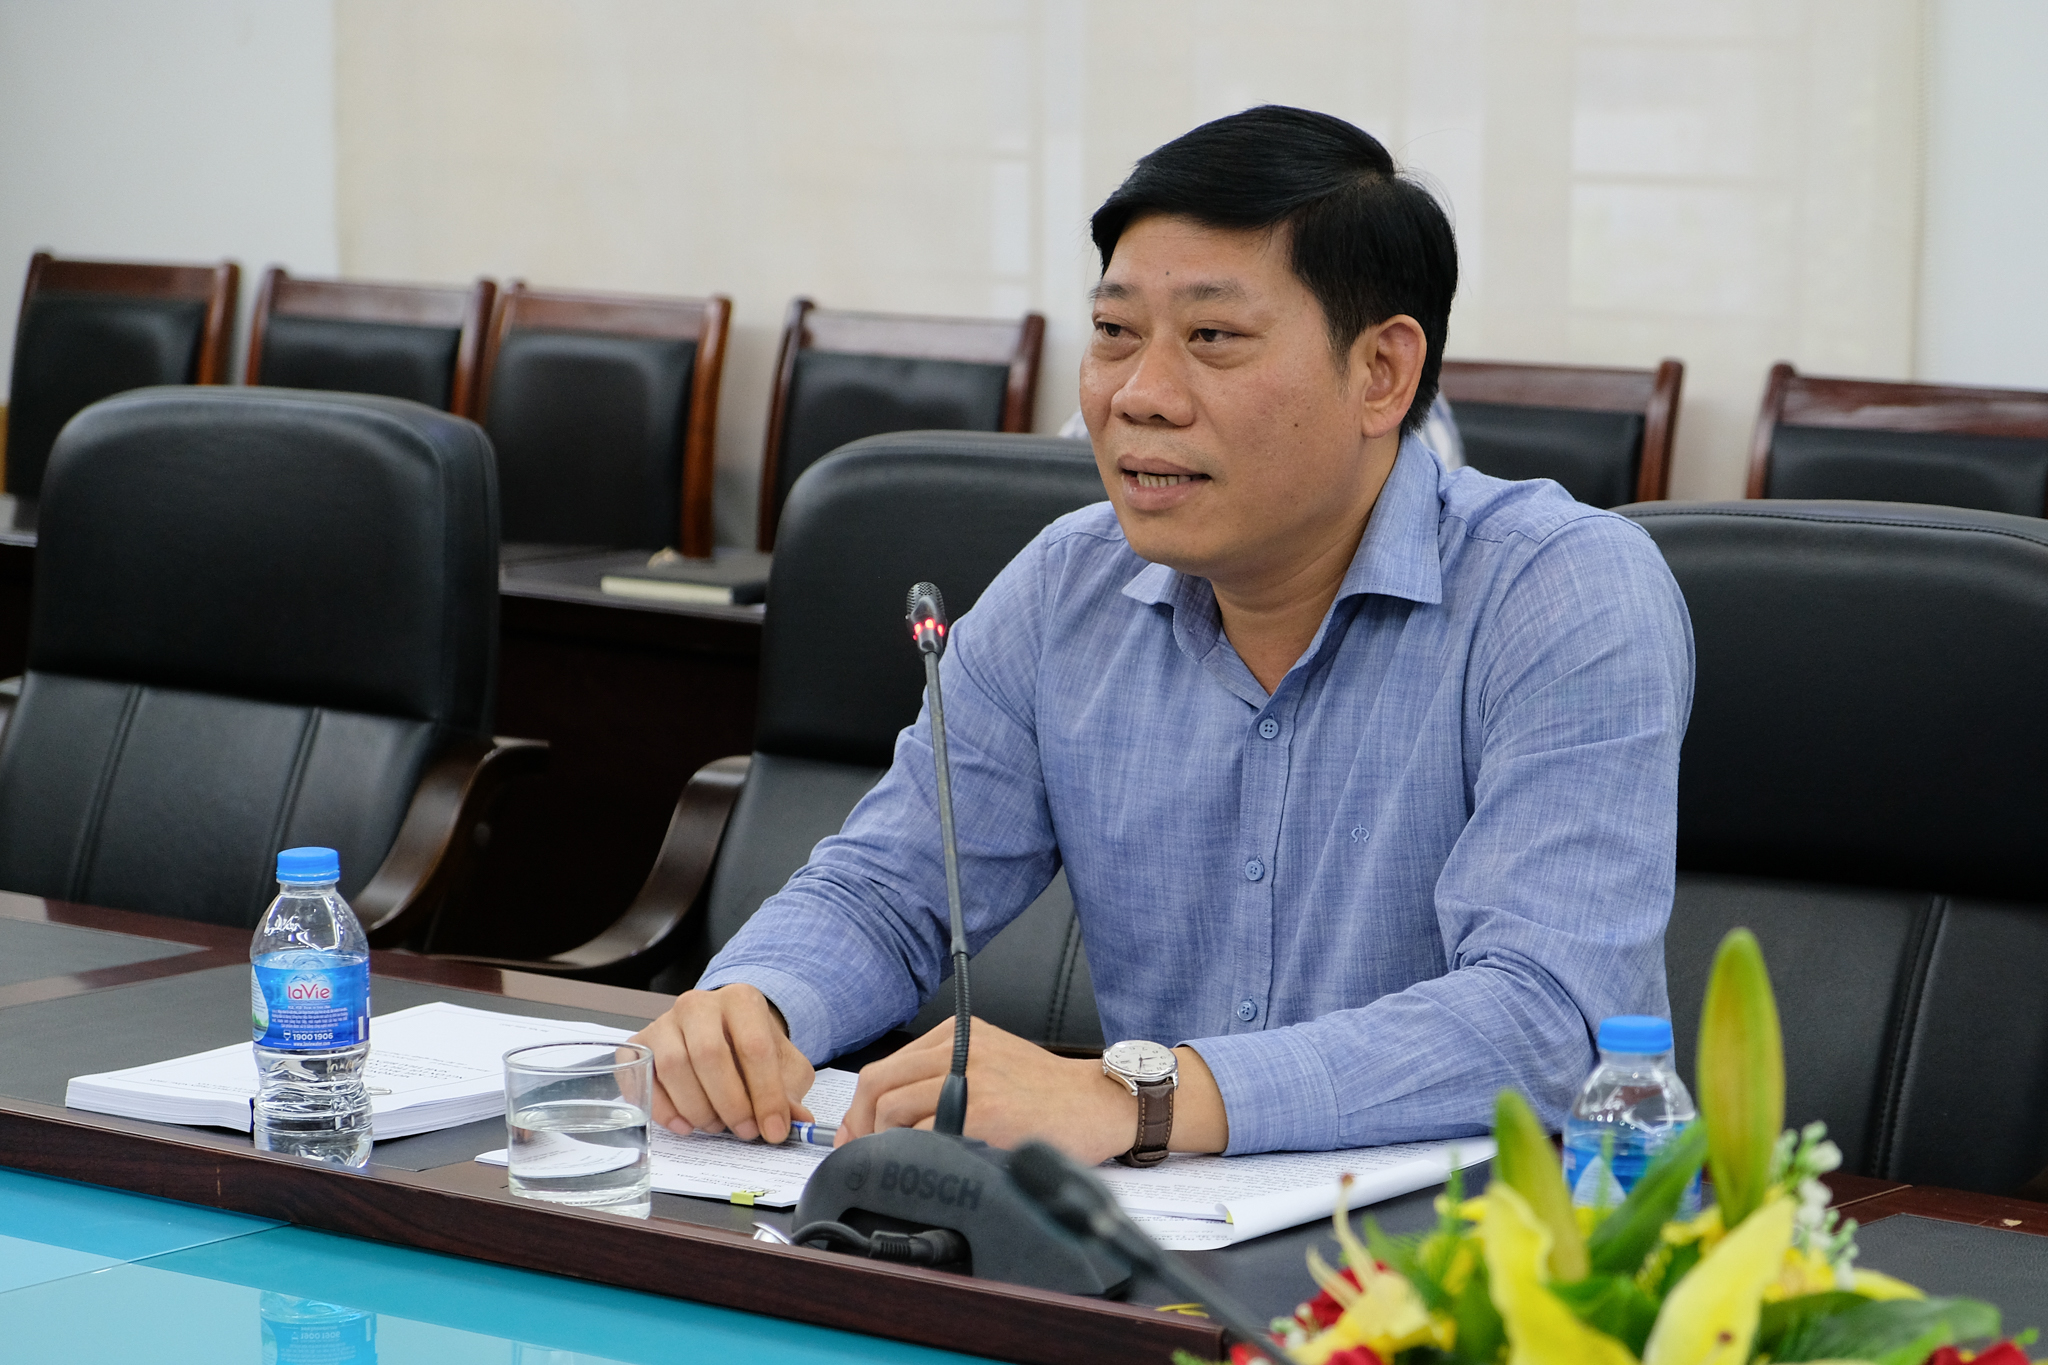 Ông Nguyễn Quang Hùng, Phó Tổng cục trưởng Tổng cục Thủy sản cho rằng bảo vệ và mở rộng các khu bảo tồn biển là giải pháp góp phần thúc đẩy phát triển nghề cá bền vững. Ảnh: Tùng Đinh.